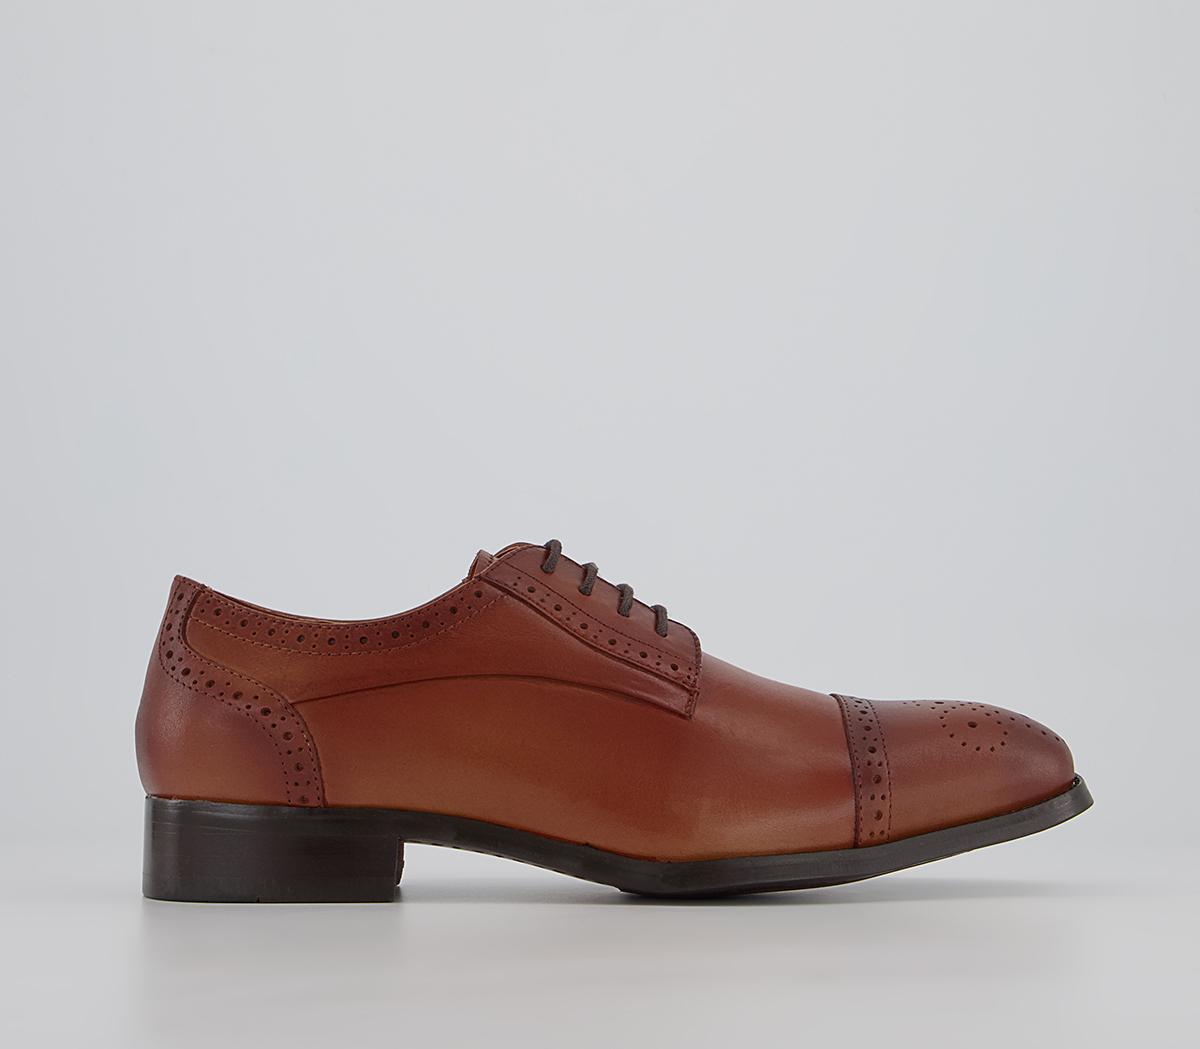 OFFICE Mitcham Toe Cap Derby Shoes Tan Leather - Men’s Smart Shoes